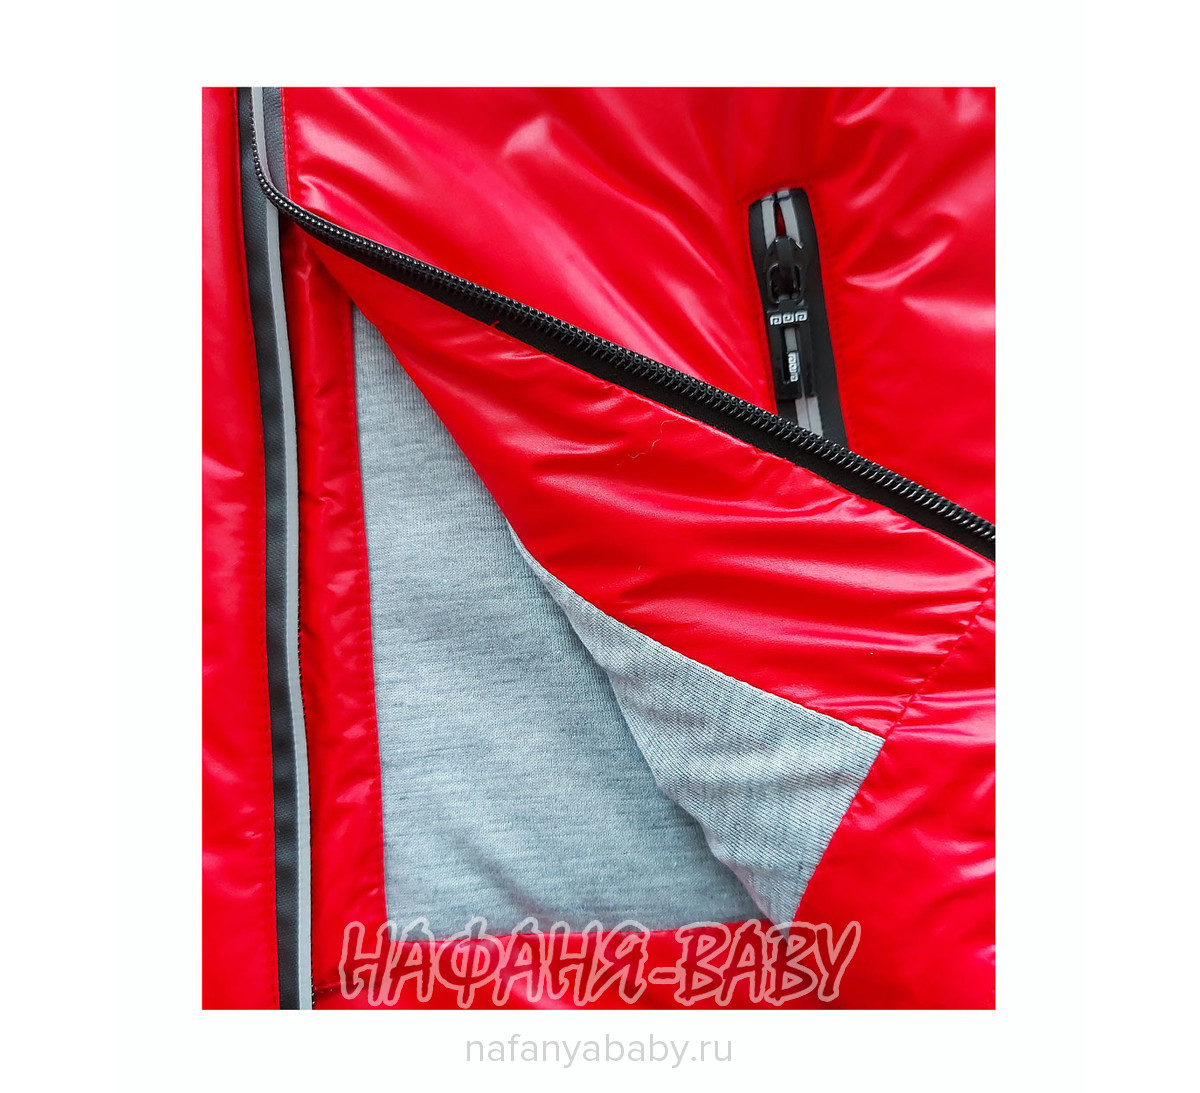 Детская демисезонная куртка DELFIN-FREE арт: 2158, 5-9 лет, 1-4 года, цвет красный, оптом Китай (Пекин)